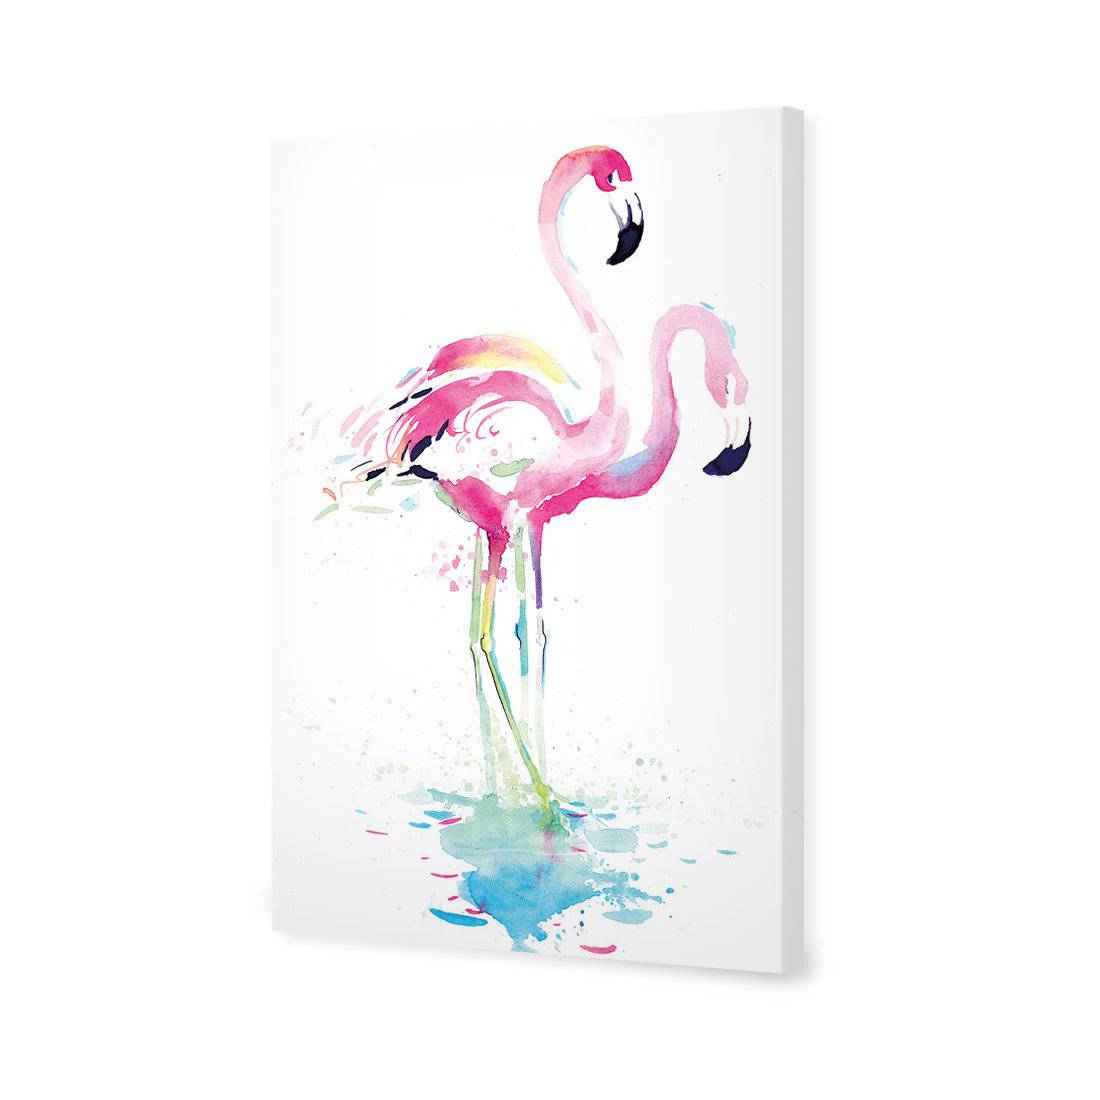 Flirty Flamingos Canvas Art-Canvas-Wall Art Designs-45x30cm-Canvas - No Frame-Wall Art Designs